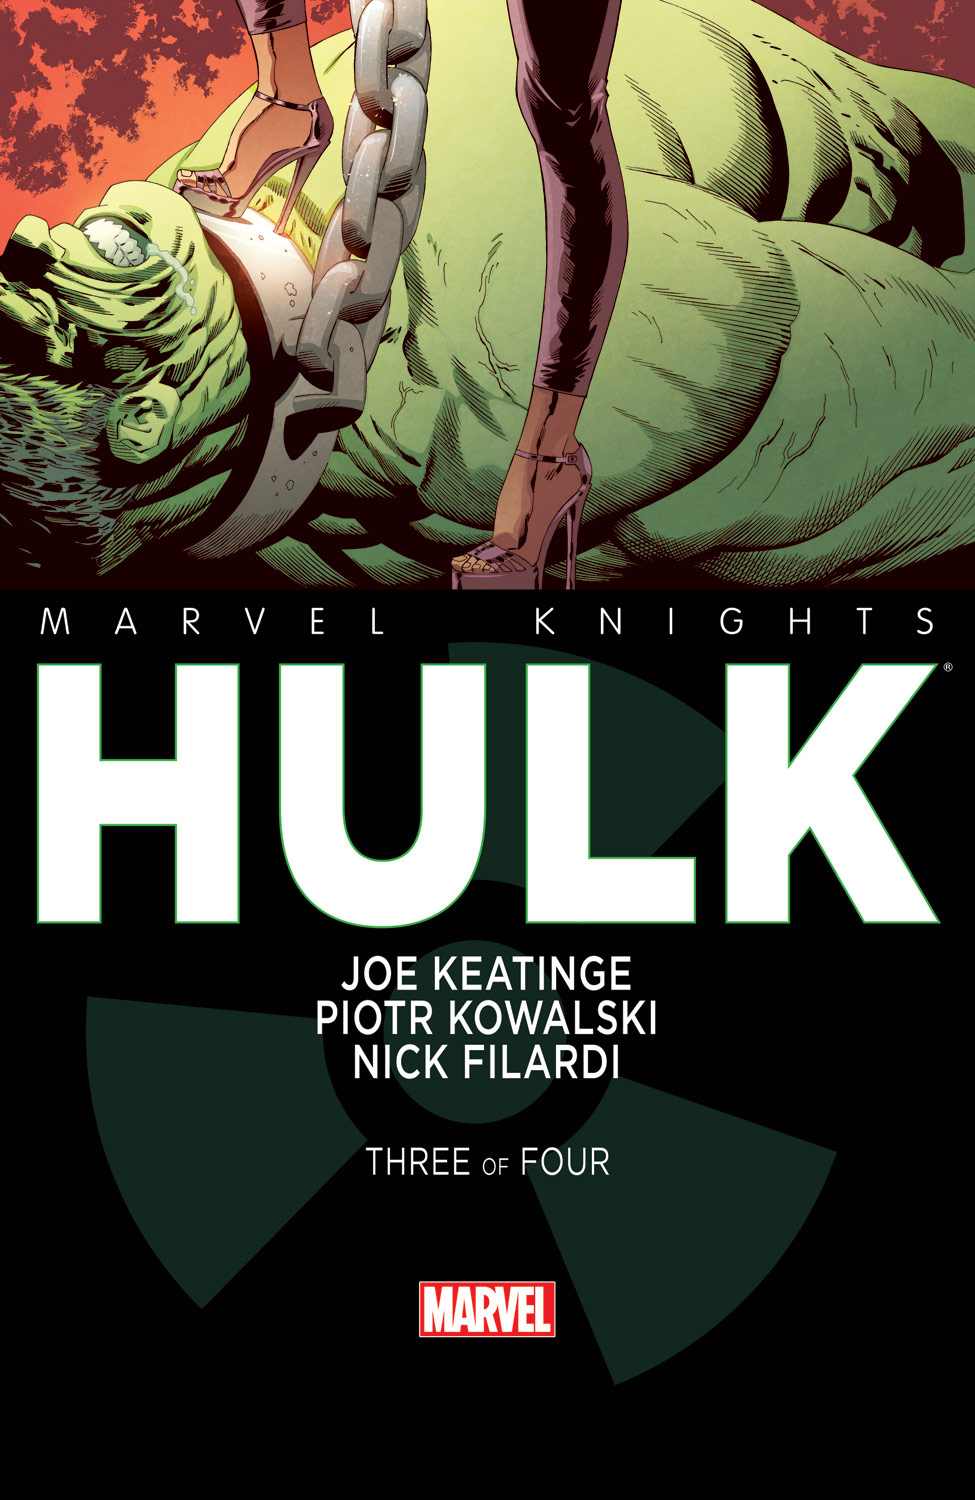 Marvel Knights: Hulk (2013) #3